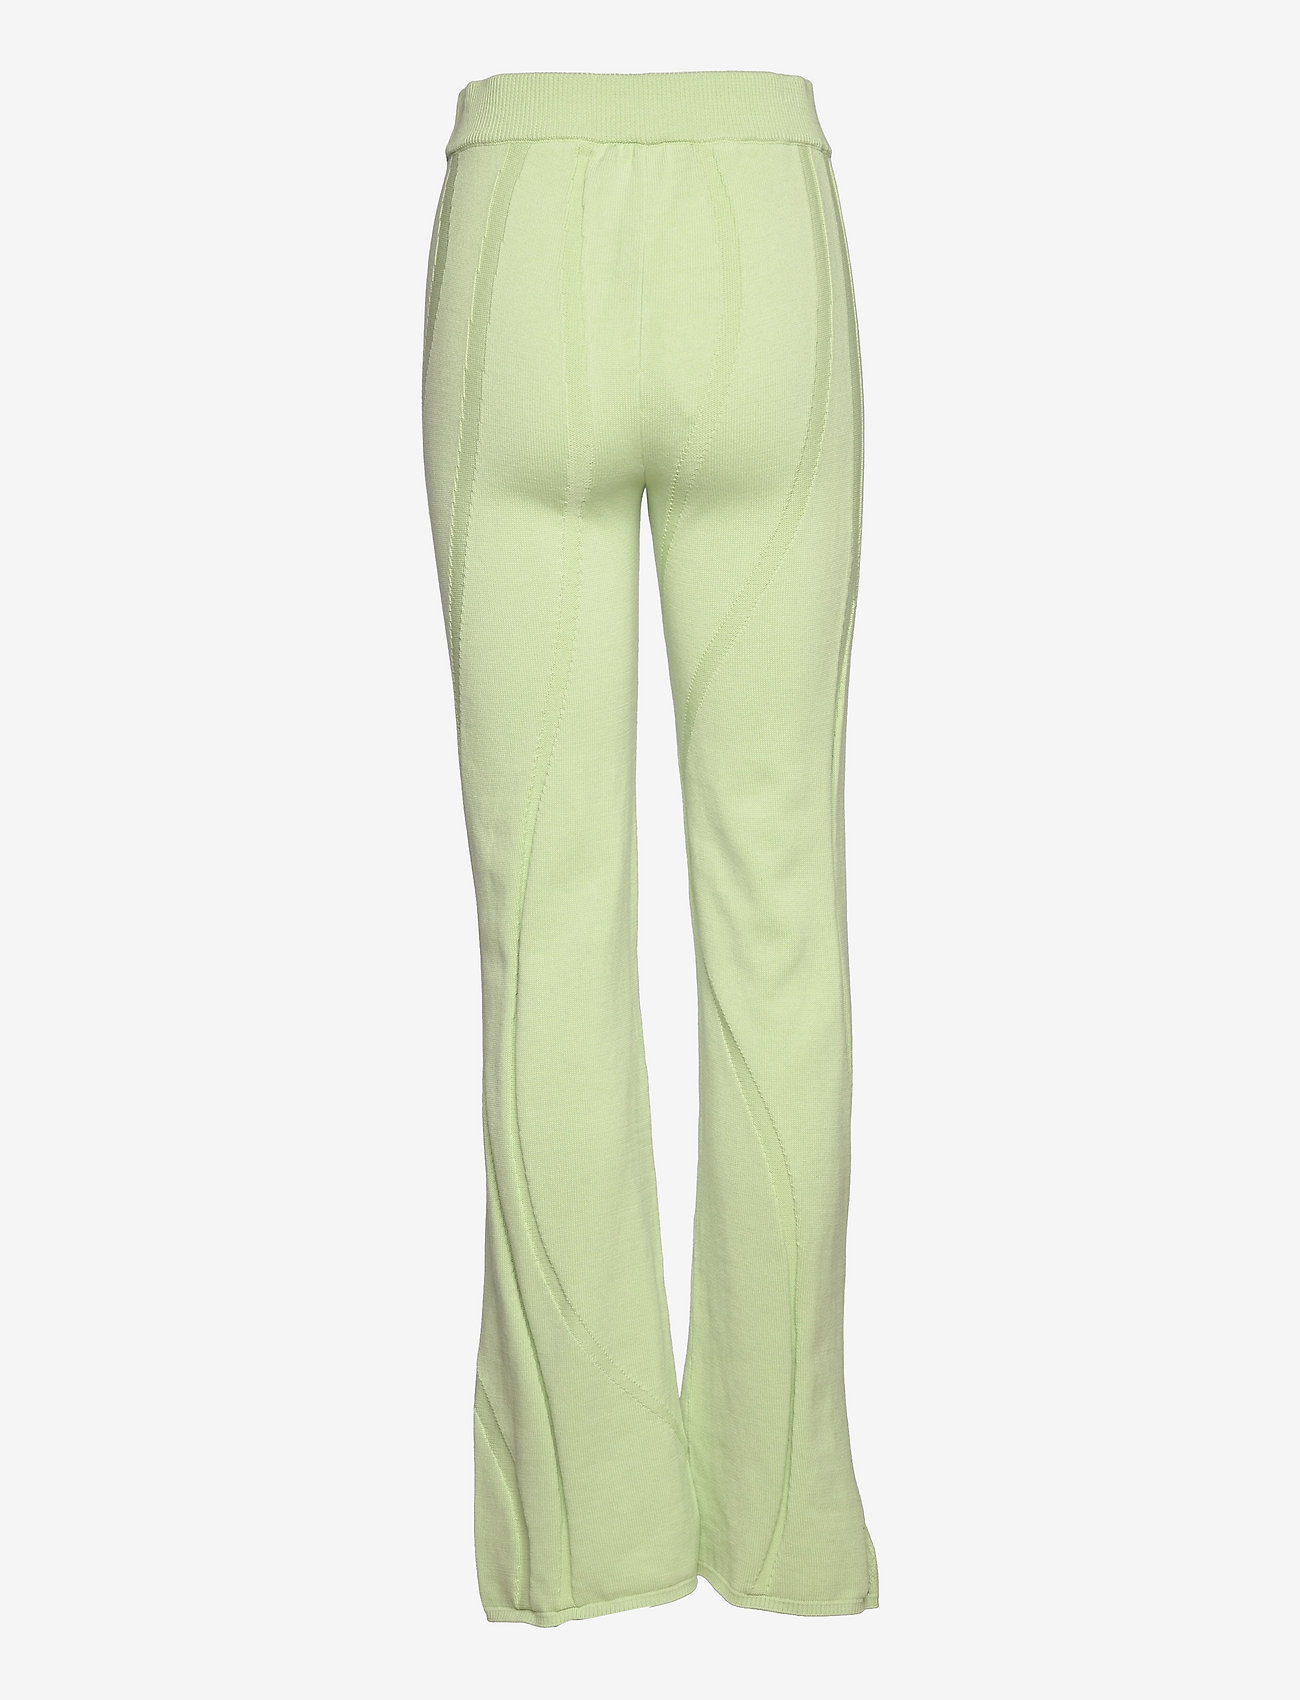 HAN Kjøbenhavn - Knit Trousers - kvinner - pale green - 1